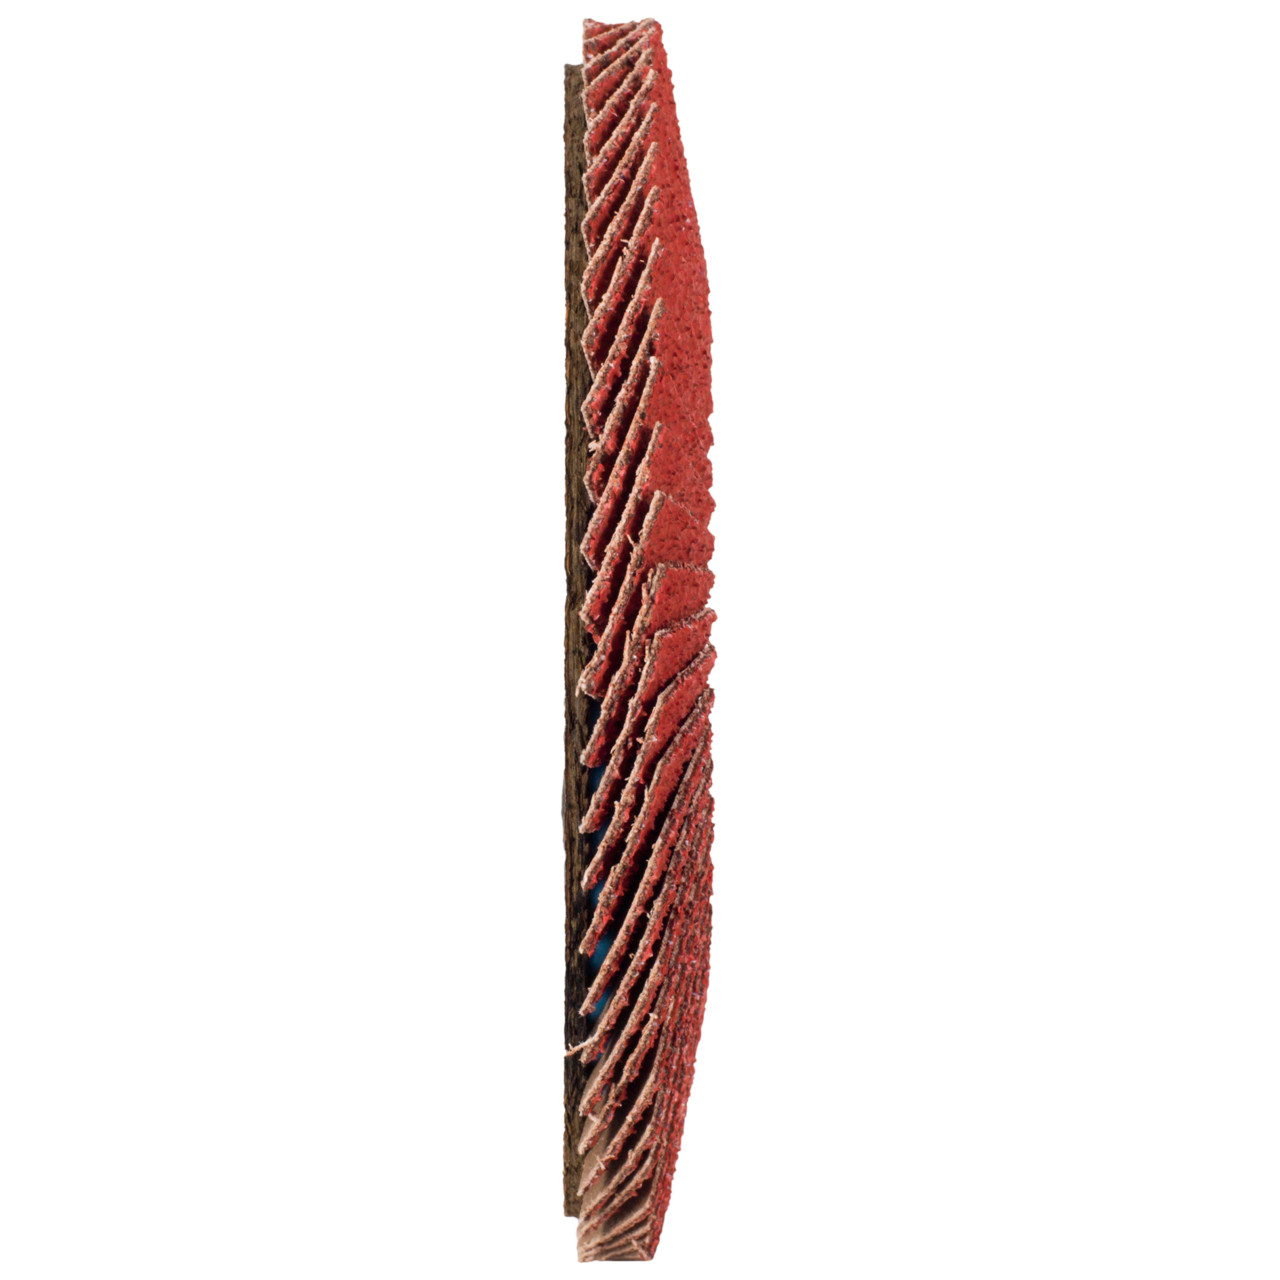 Tyrolit Rondelle à lamelles DxH 125x22,23 CERABOND Rondelle à lamelles pour acier inoxydable, P40, forme : 28A - modèle droit (modèle à corps en fibre de verre), Art. 34166175